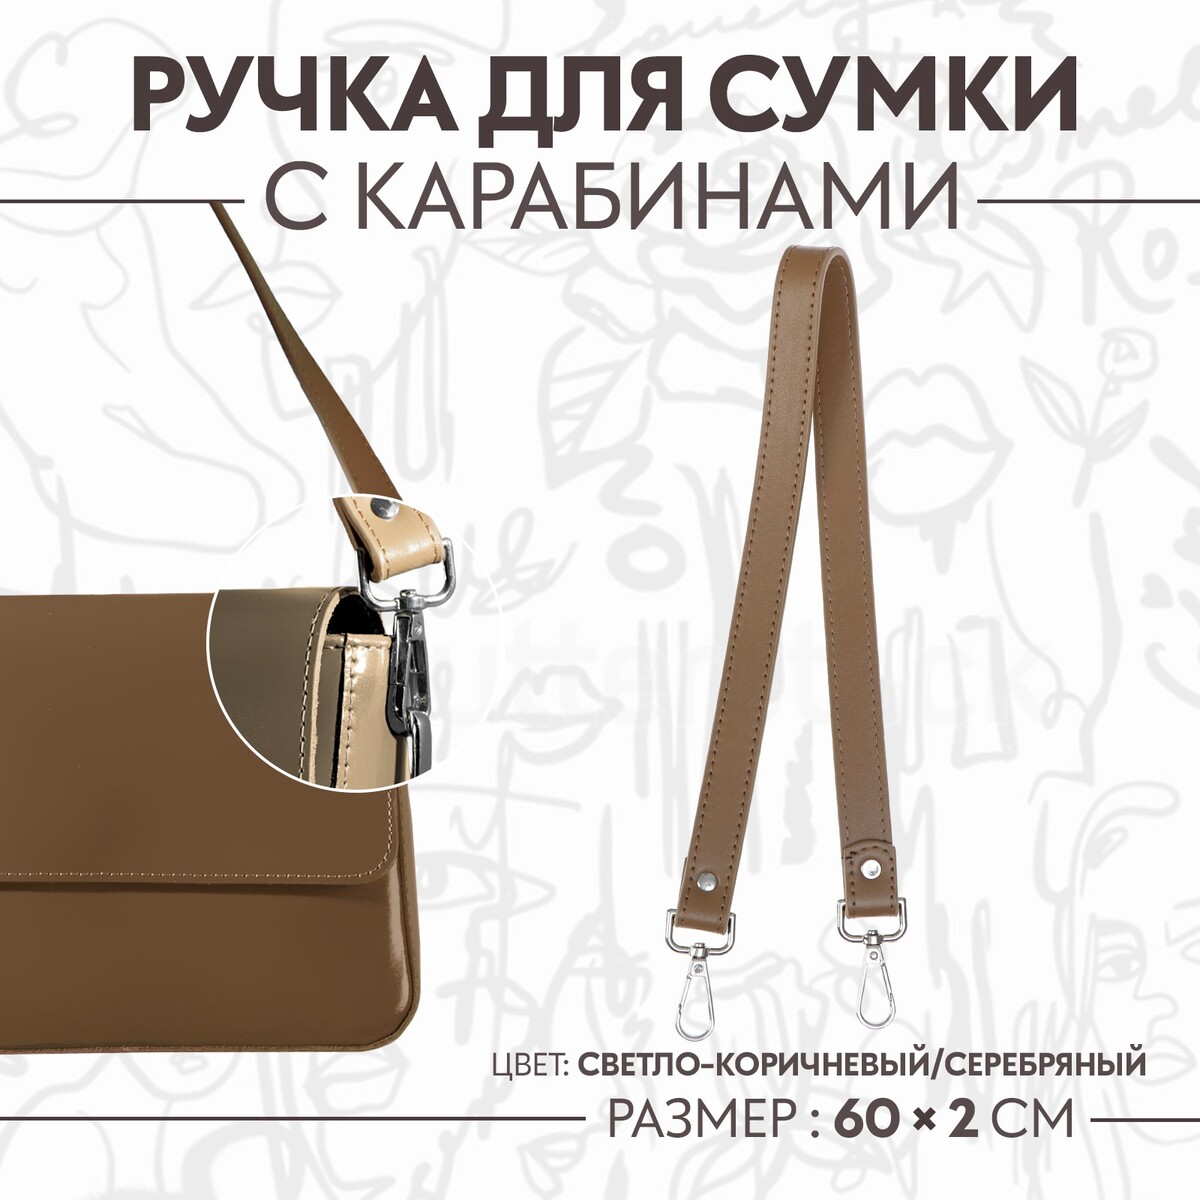 Ручка для сумки, с карабинами, 60 × 2 см, цвет светло-коричневый ручка для сумки с карабинами 60 × 2 см светло коричневый